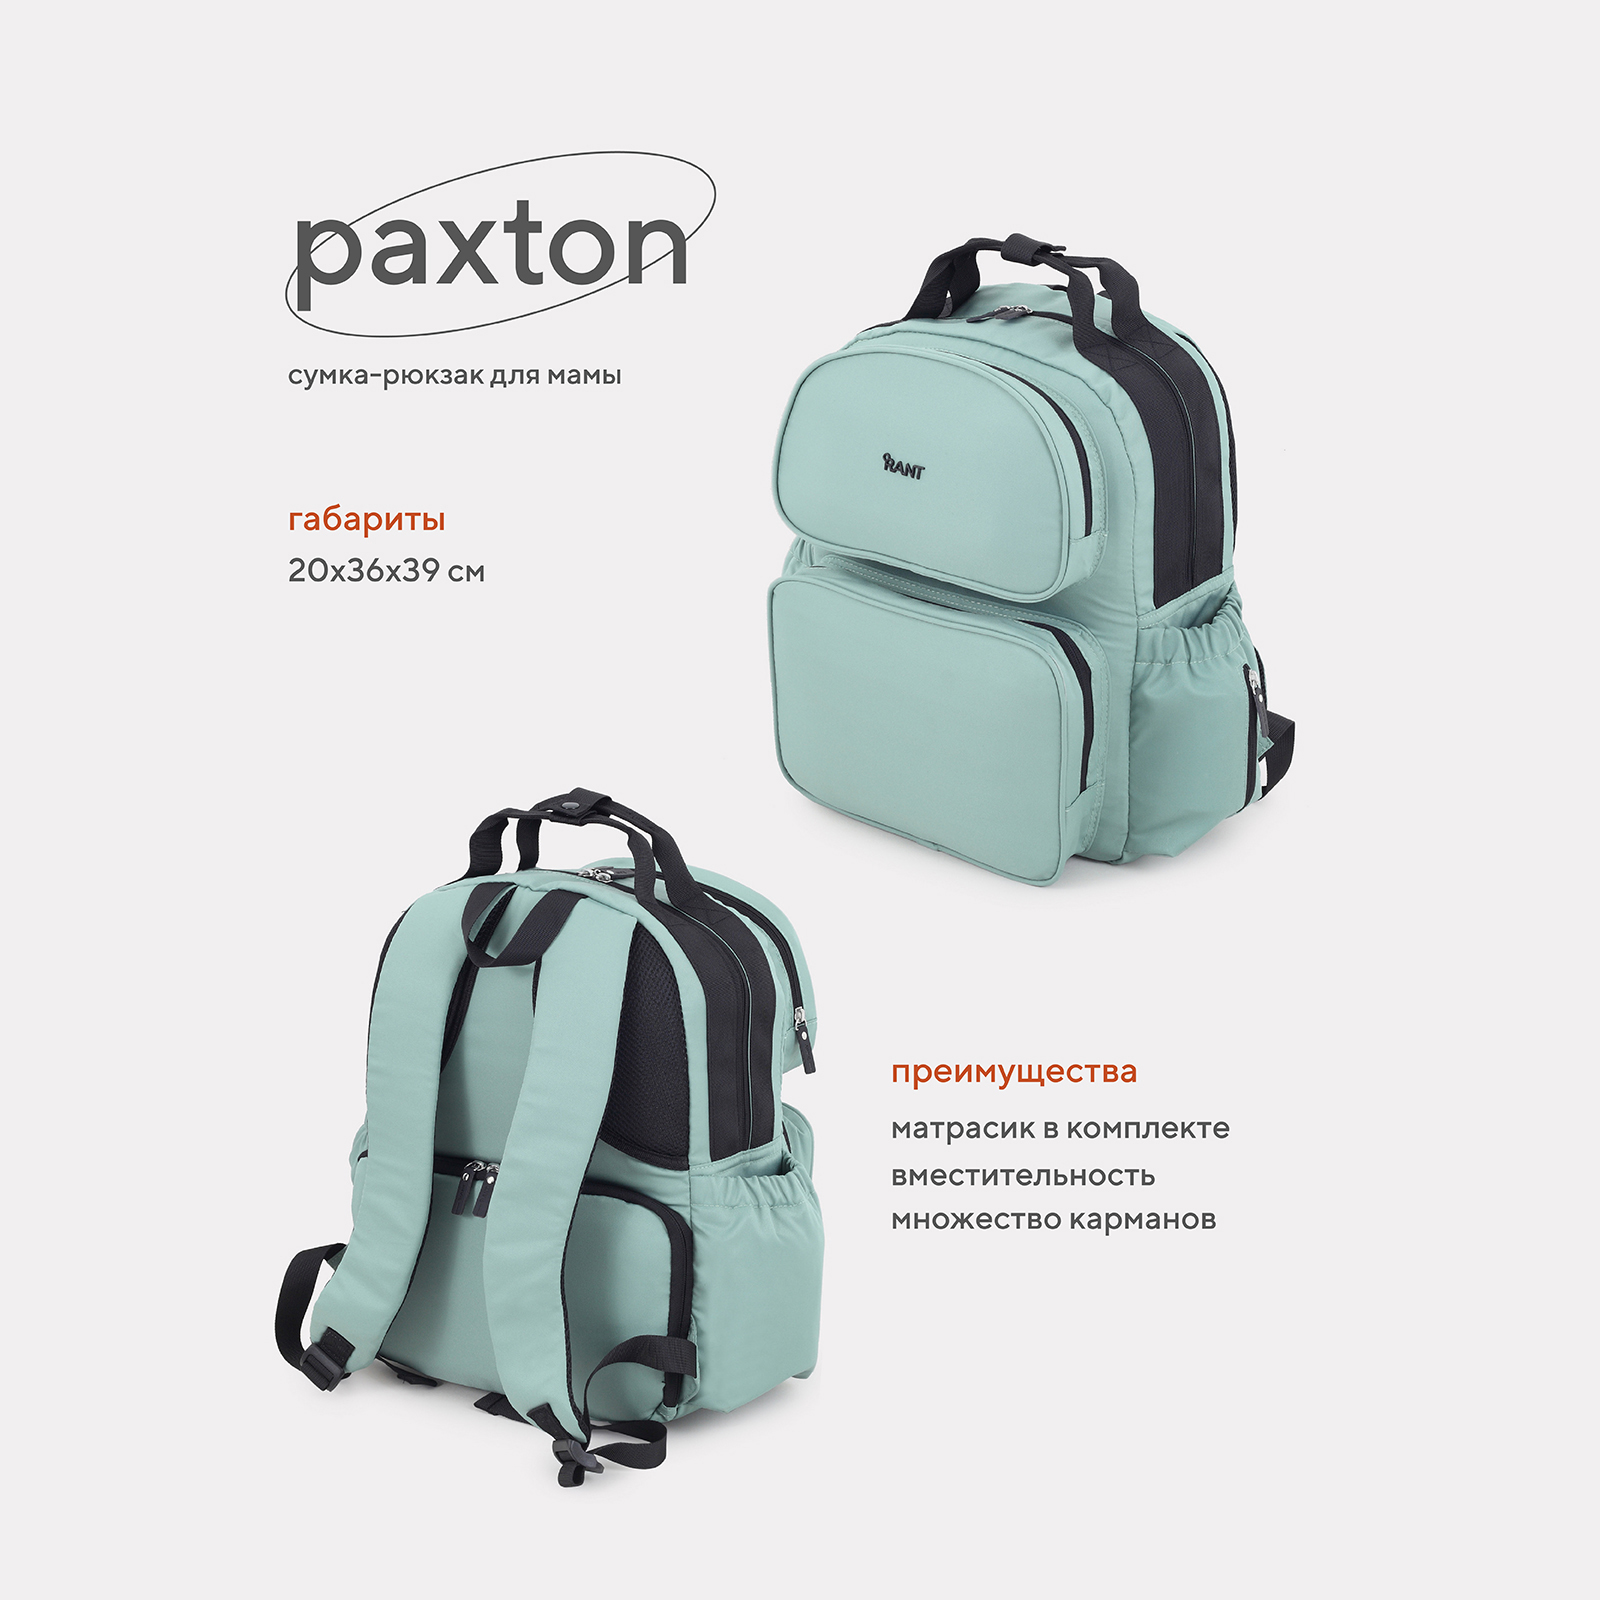 Сумка-рюкзак для мамы RANT Paxton RB008 Green рюкзак переноска waterland keylime green